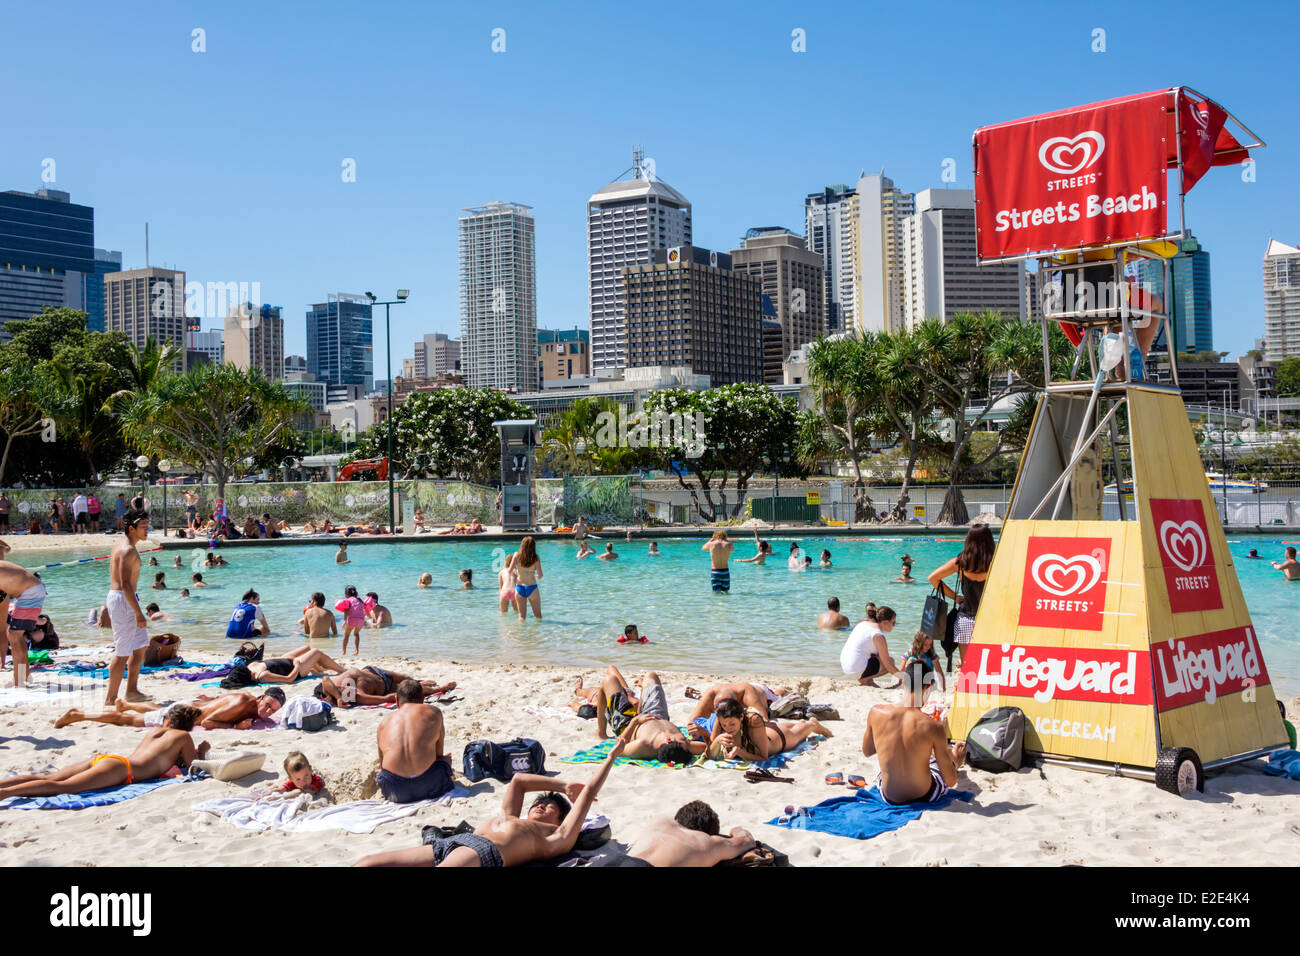 Brisbane Australia, Southbank Parklands, Streets Beach, solarium, sabbia, Water CBD, skyline della città, grattacieli, edifici, AU140315048 Foto Stock